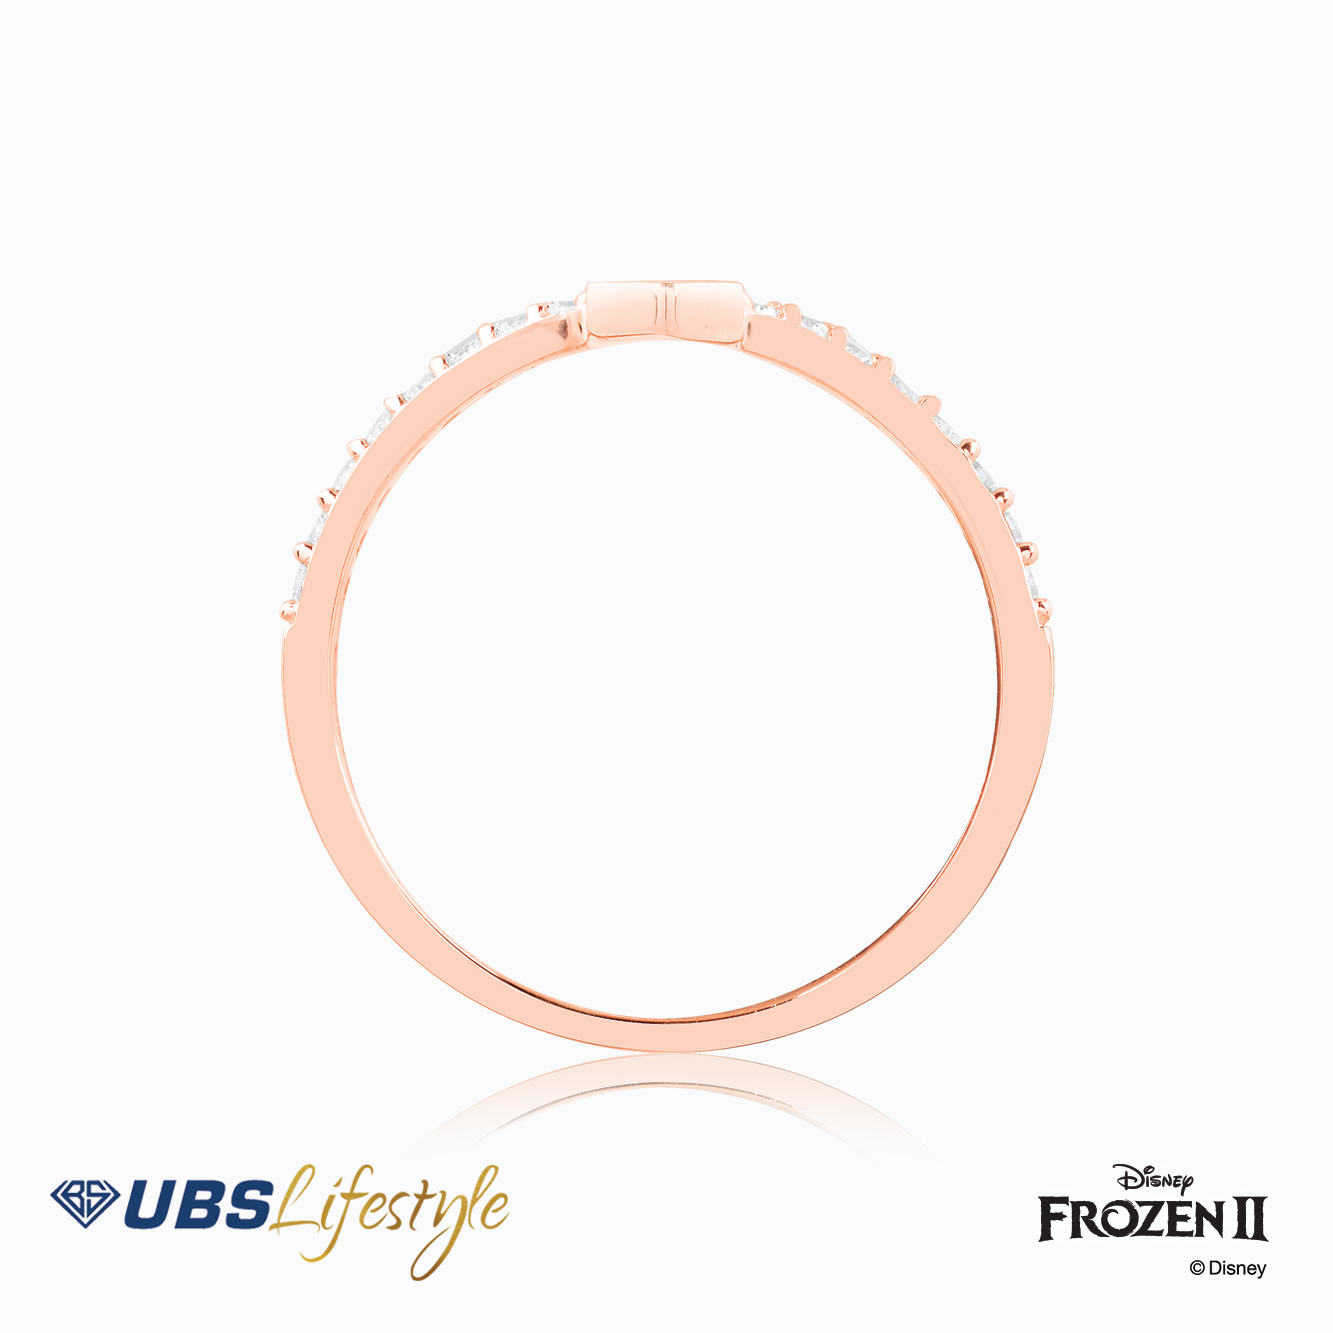 UBS Cincin Emas Disney Frozen - Ccy0168R - 17K